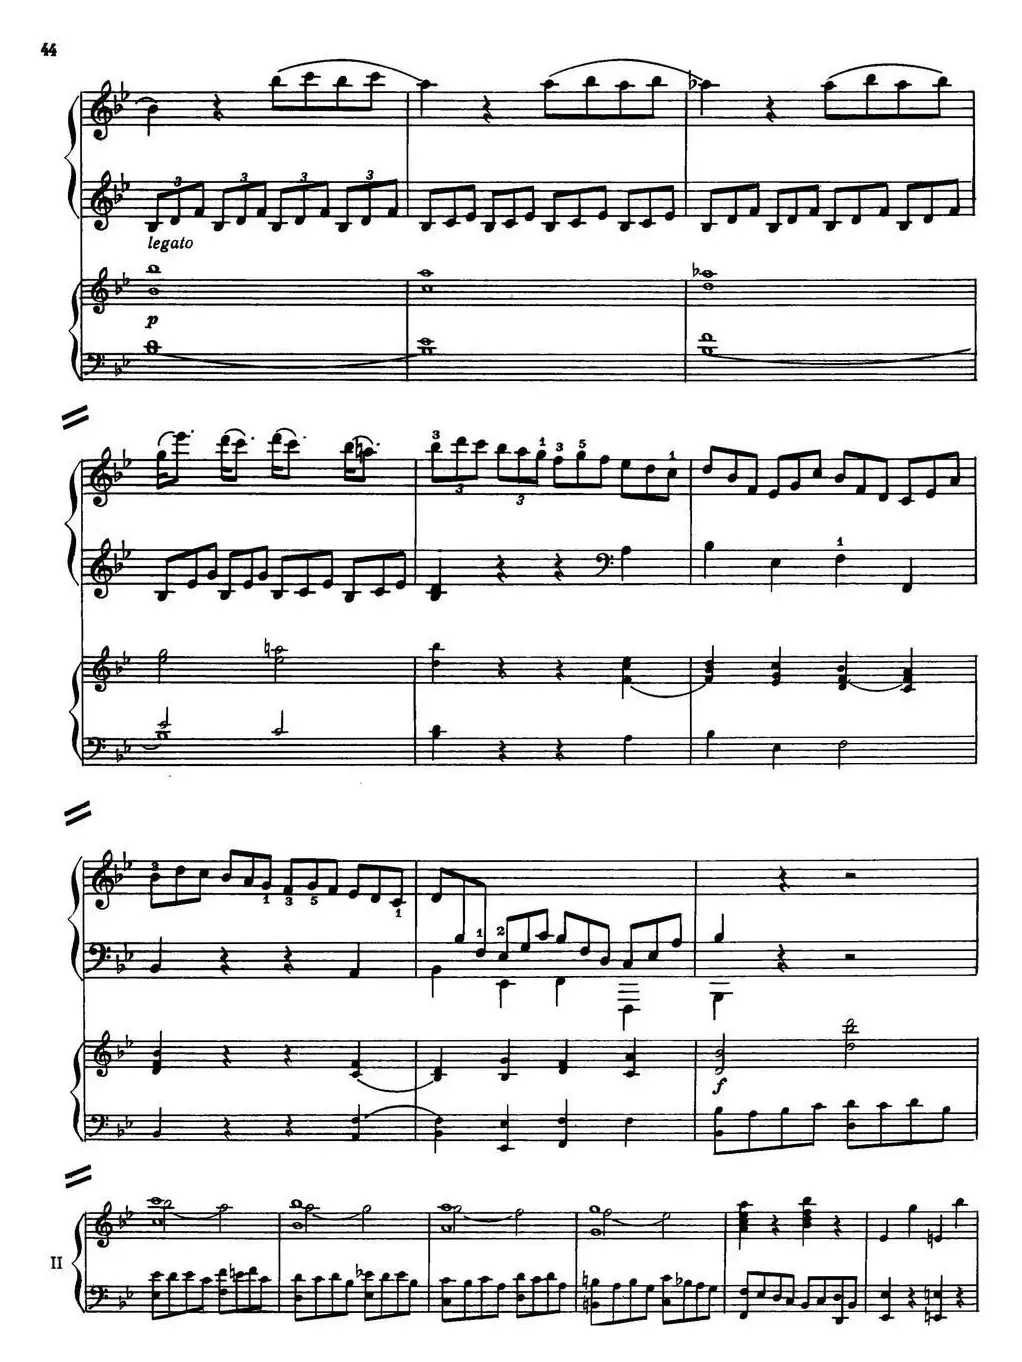 二十八部钢琴协奏曲 No.6（P31-47）